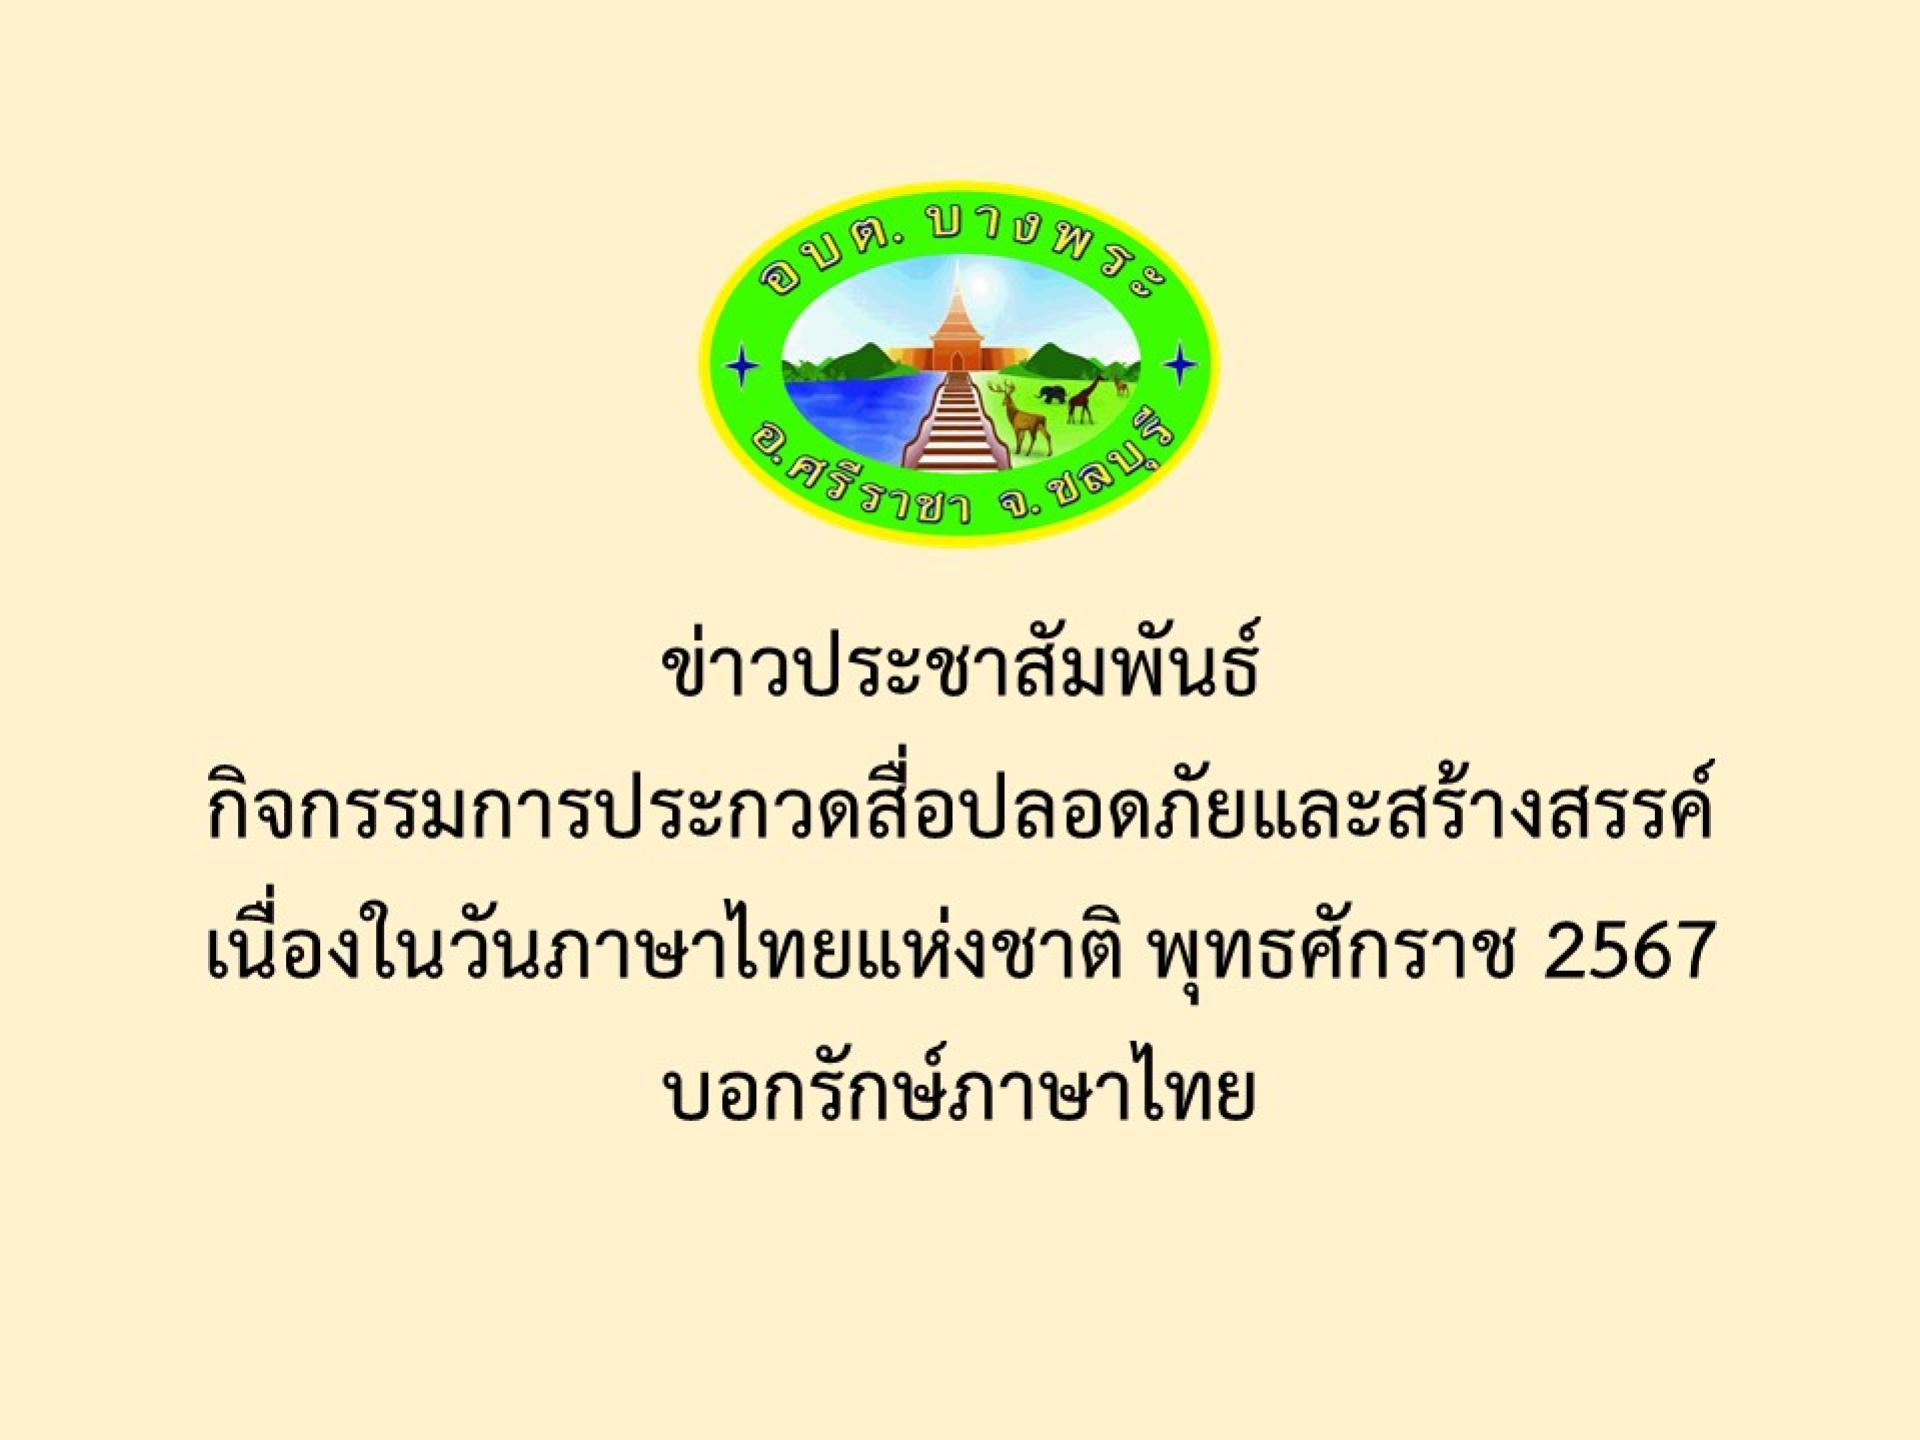 ข่าวประชาสัมพันธ์ กิจกรรมการประกวดสื่อปลอดภัยและสร้างสรรค์เนื่องในวันภาษาไทยแห่งชาติ พุทธศักราช 2567 บอกรักษ์ภาษาไทย
